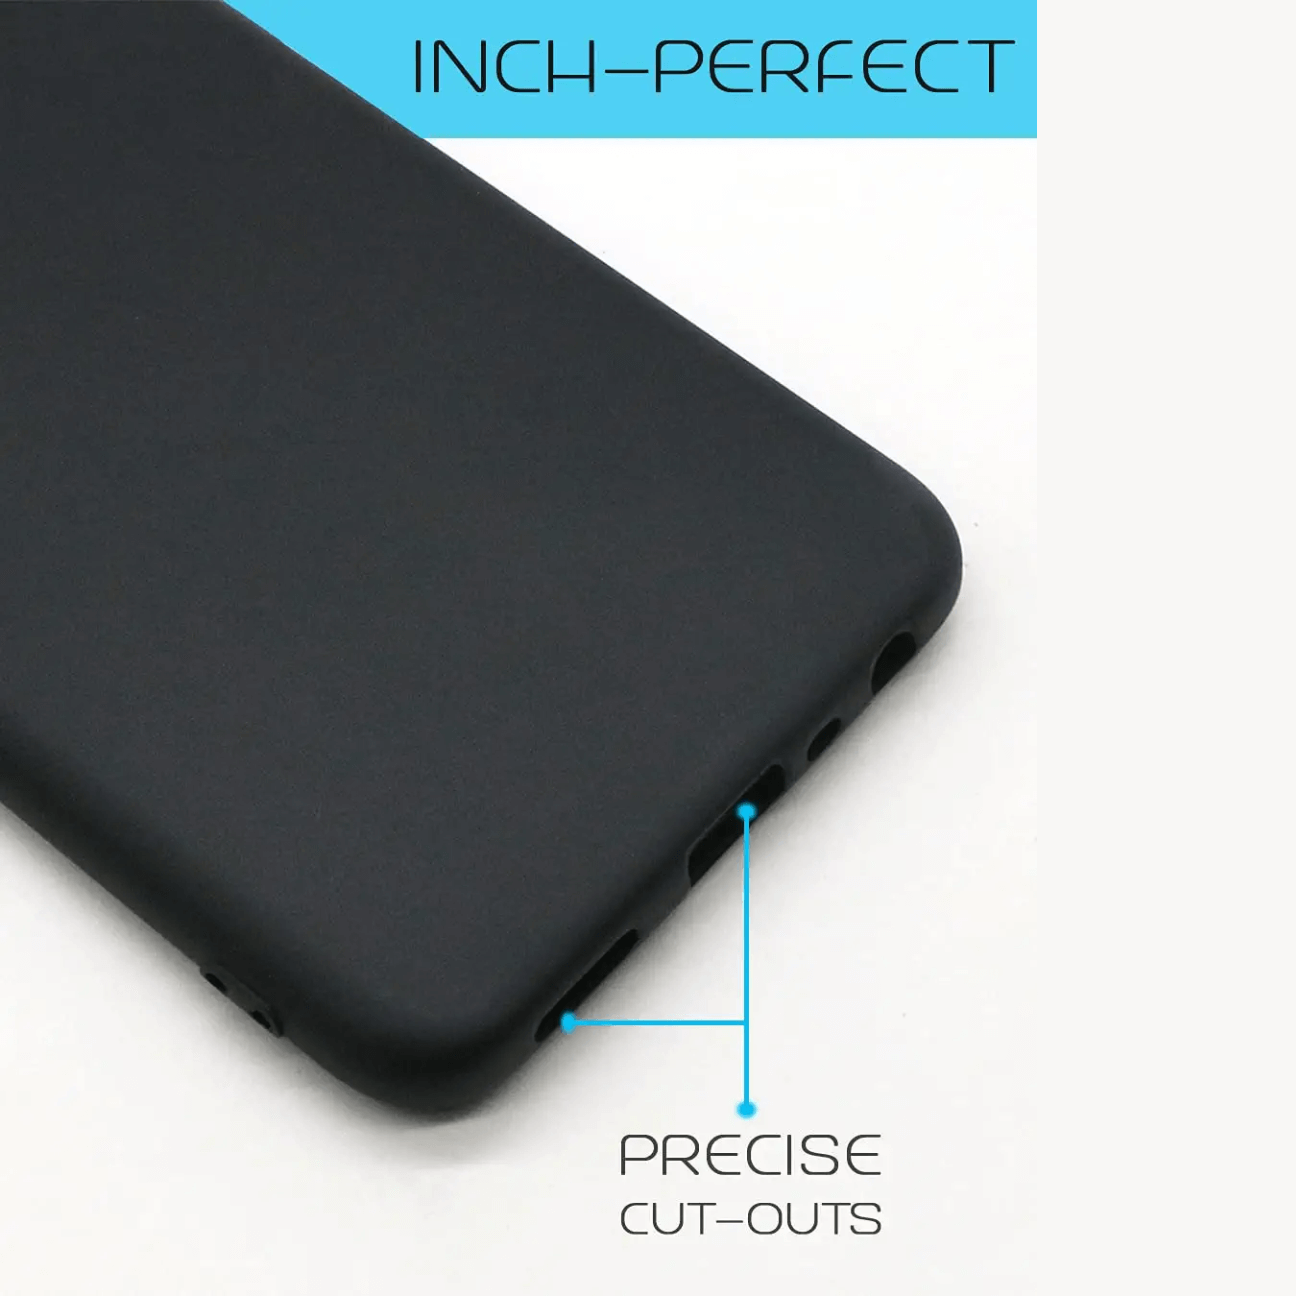 Realme C11 (2020) Black Soft Silicone Phone Case